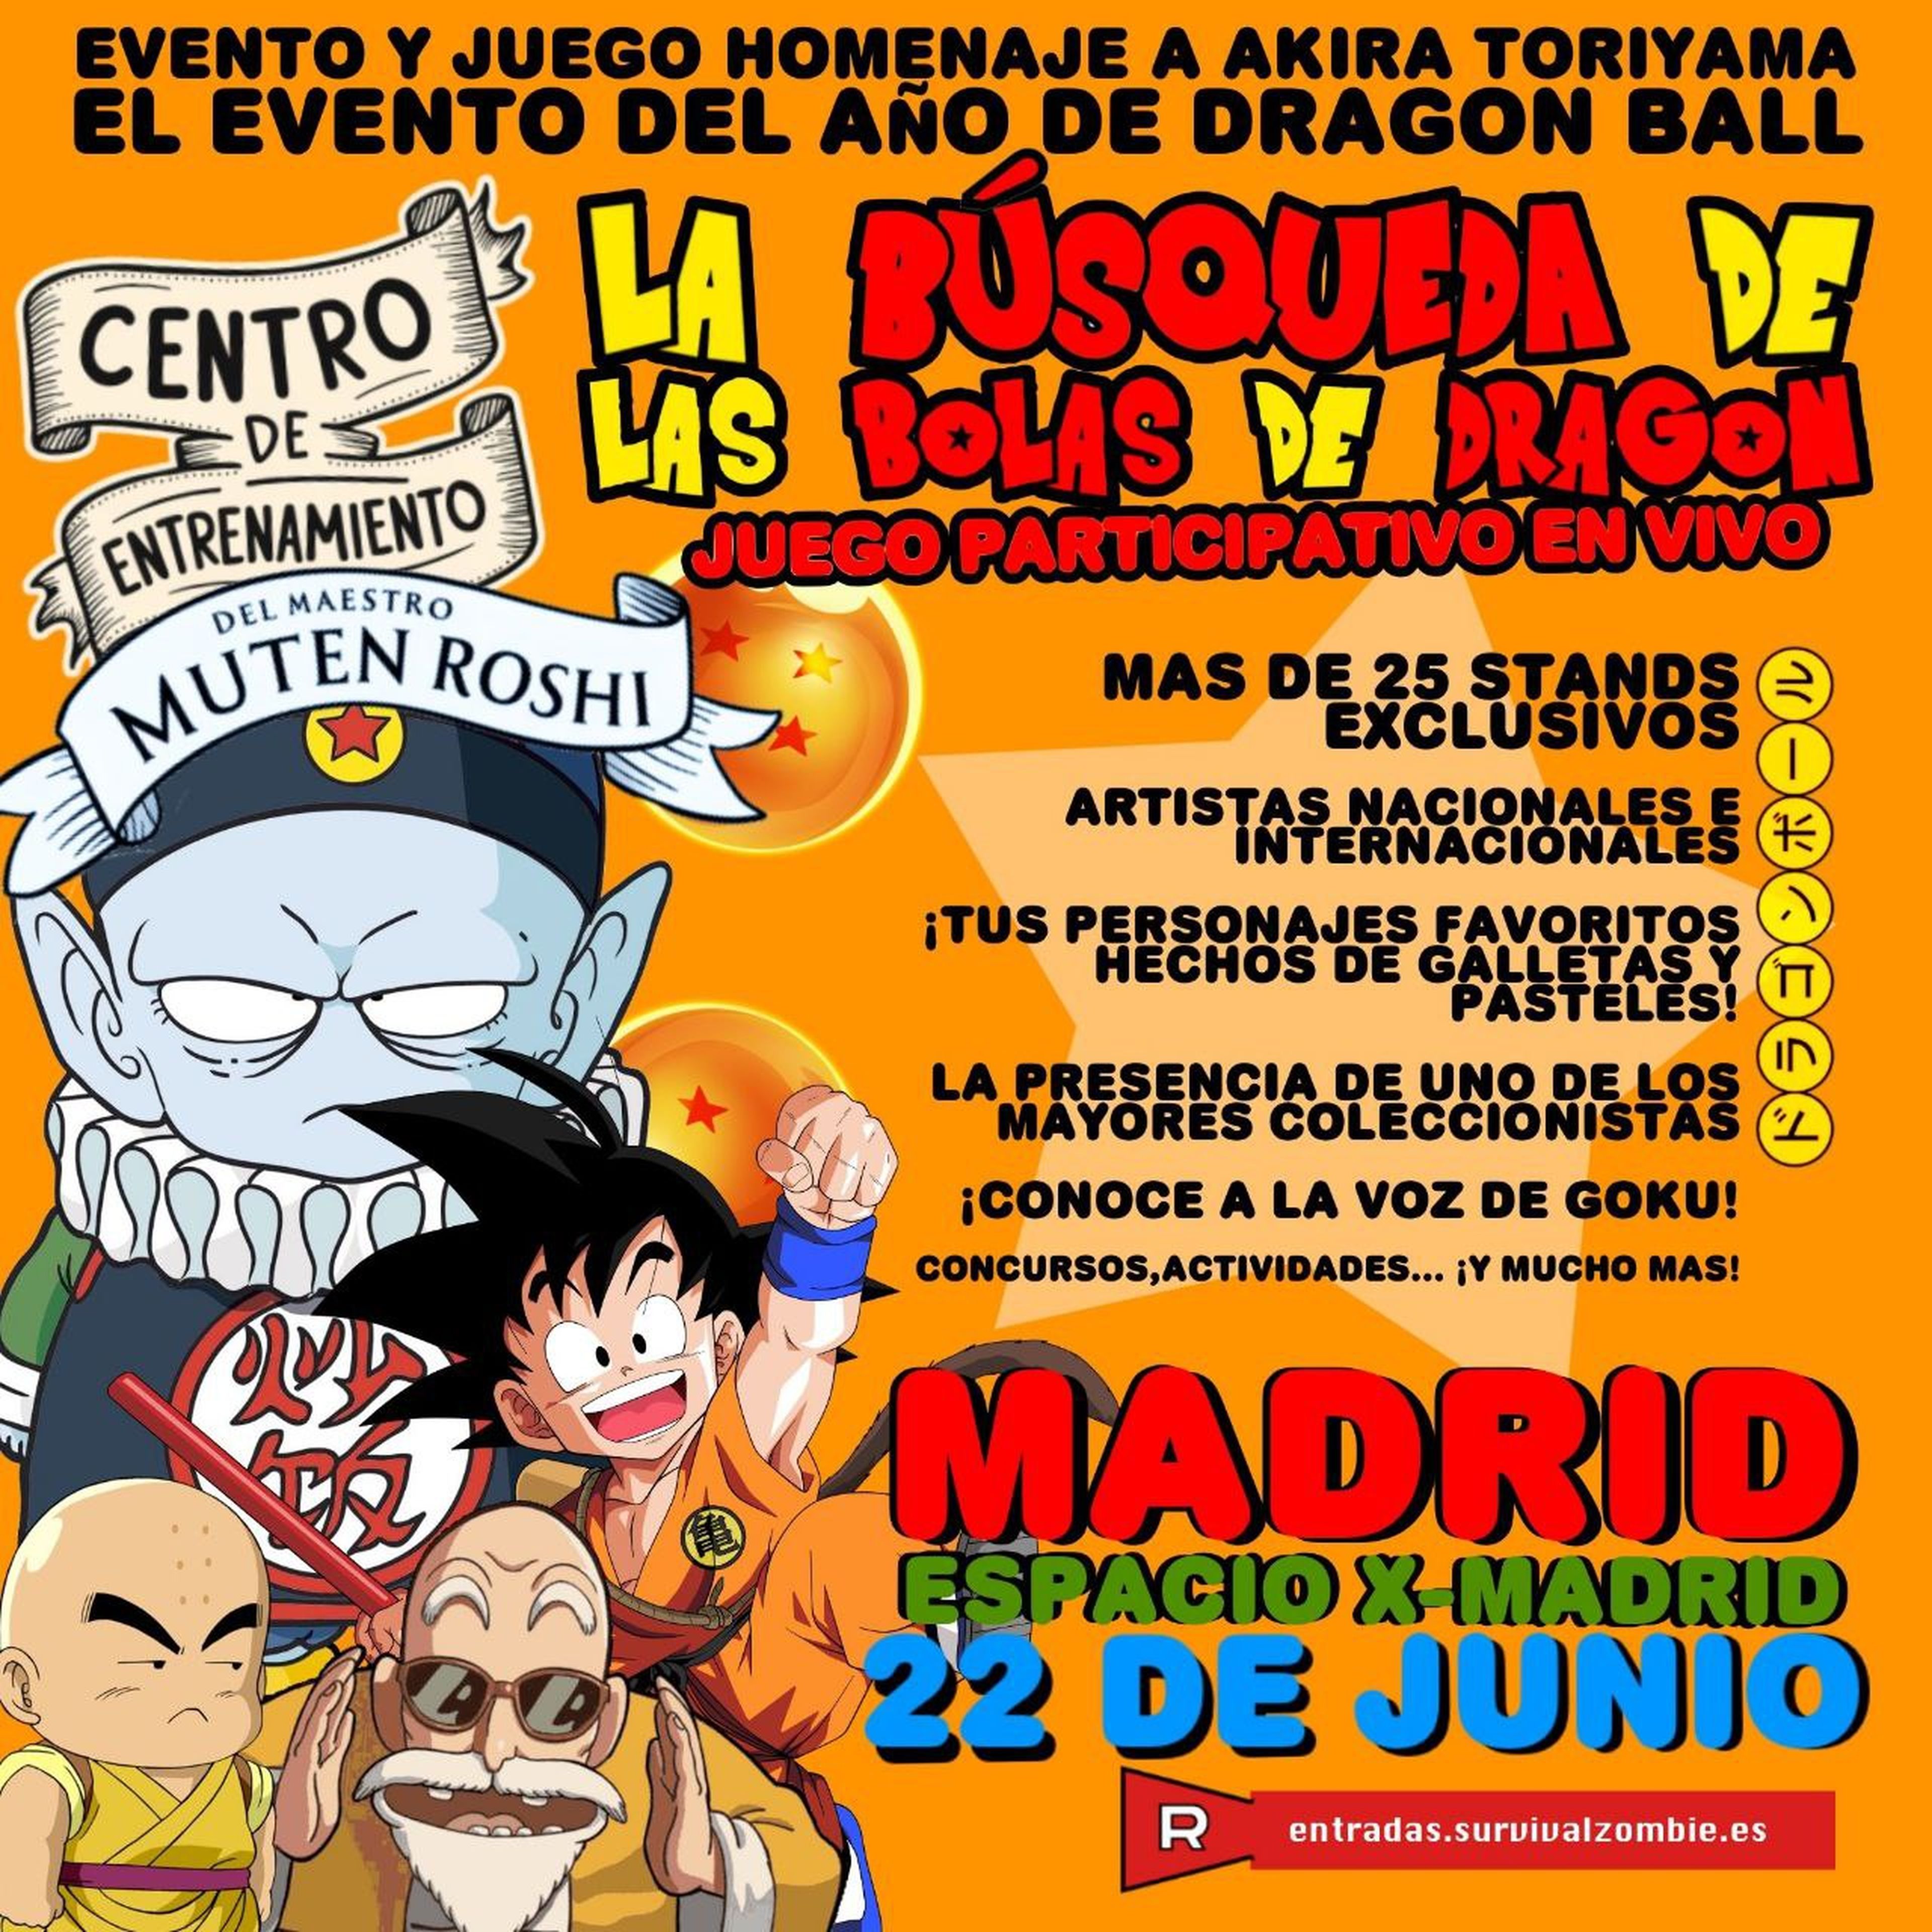 La voz de Goku en España asistirá a la primera feria homenaje de Dagon Ball que tendrá lugar este sábado en X-Madrid